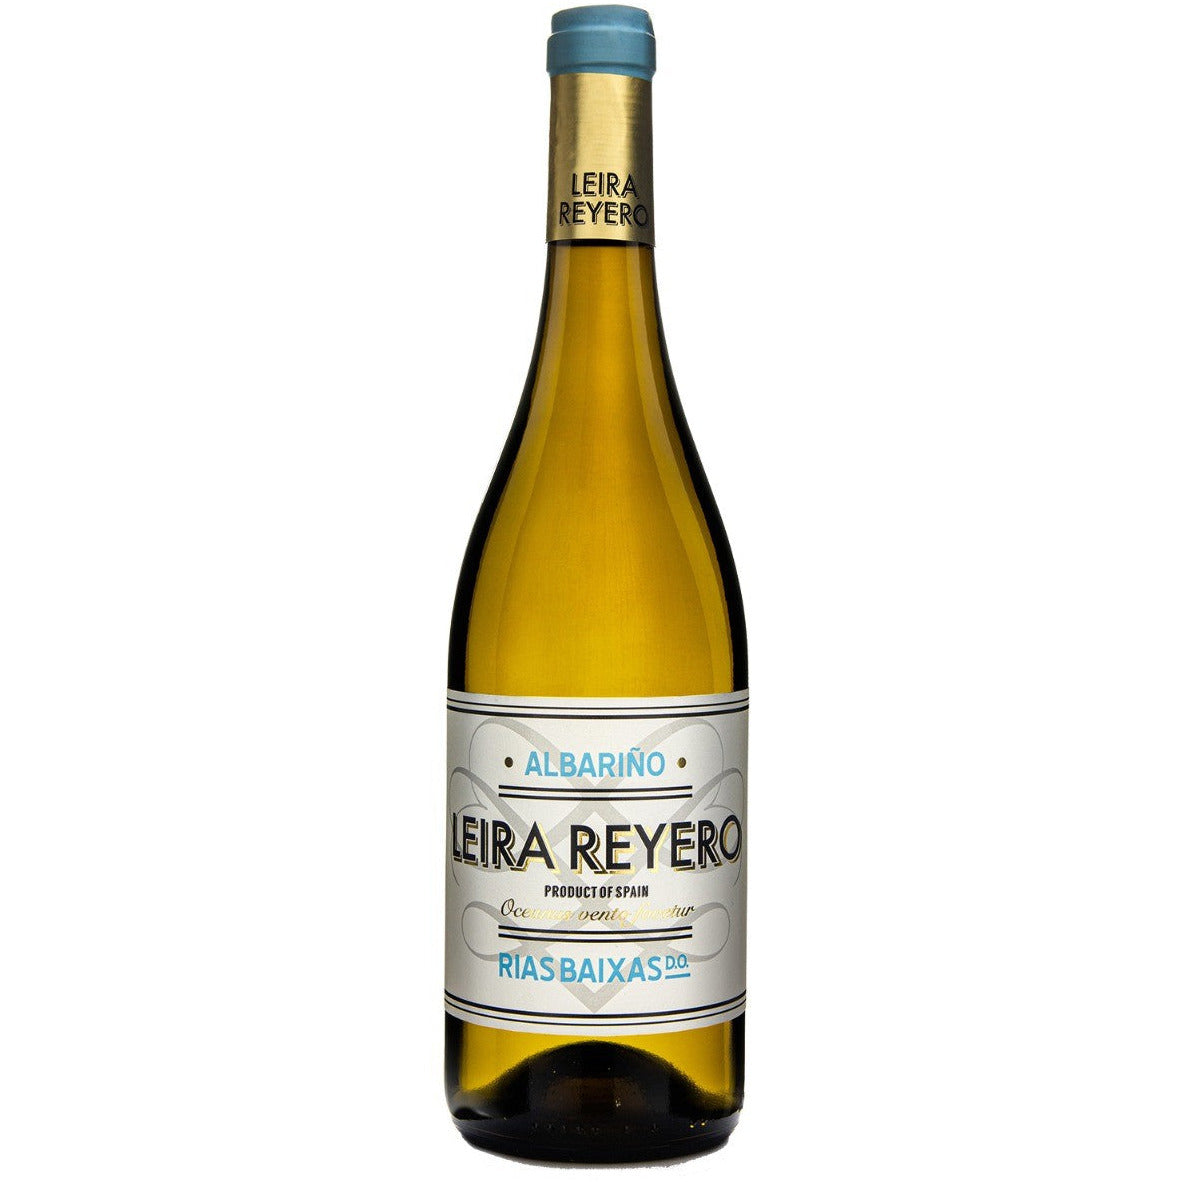 Easter Wineries - Albariño "Leira Reyero"